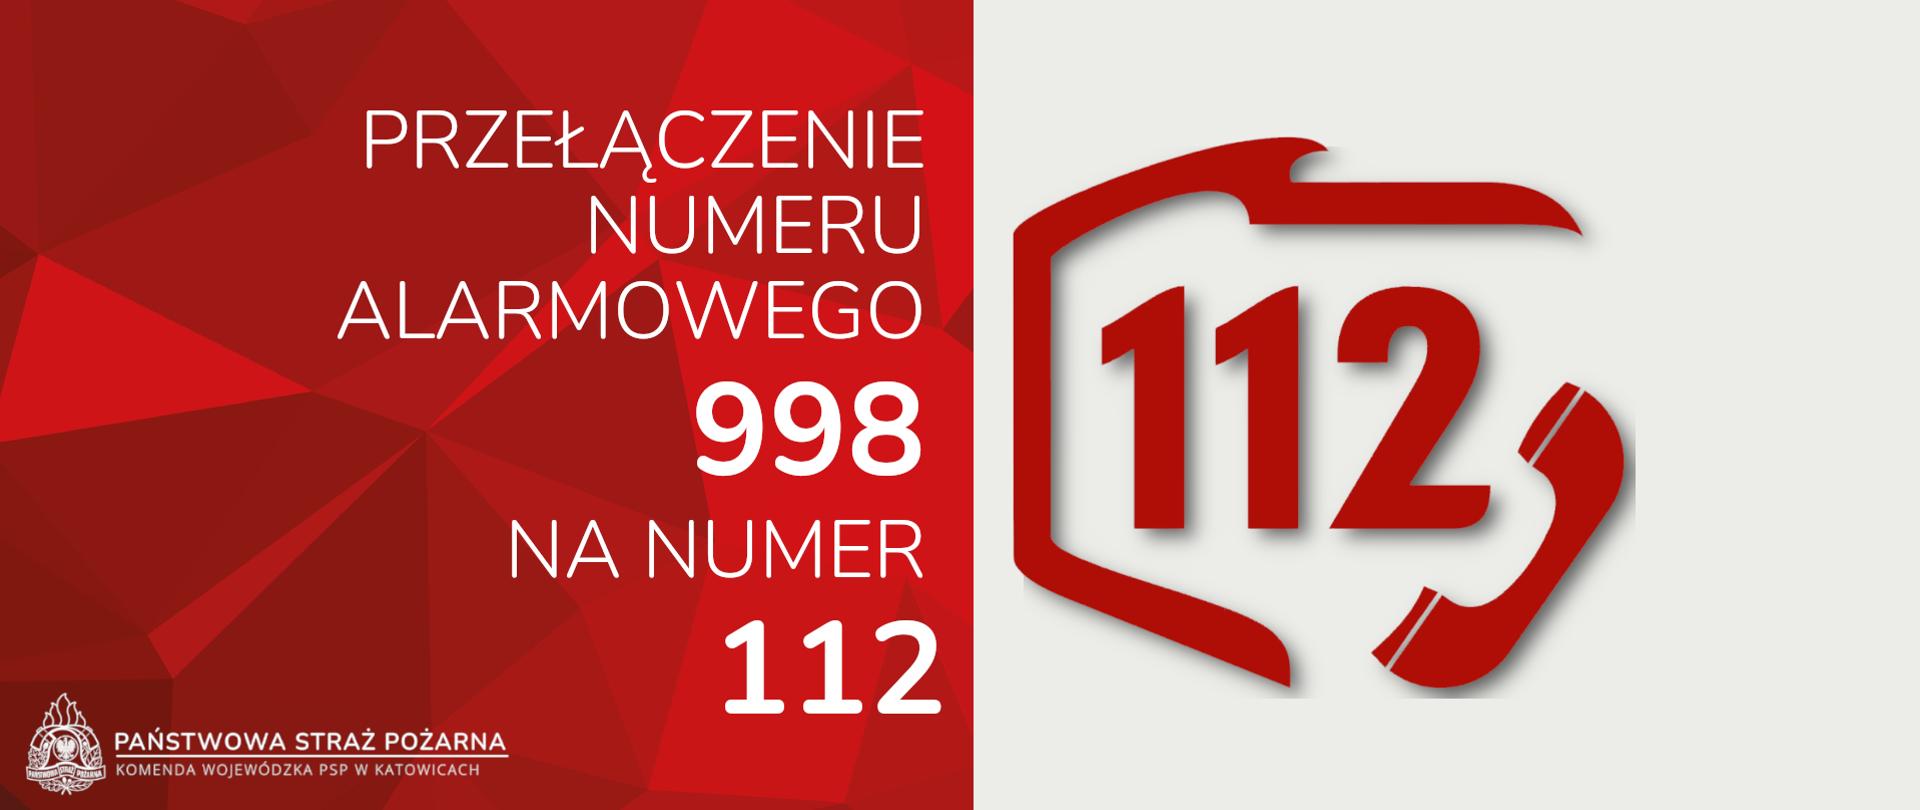 Informacja o przełączeniach numeru 998 na 112 w woj. śląskim